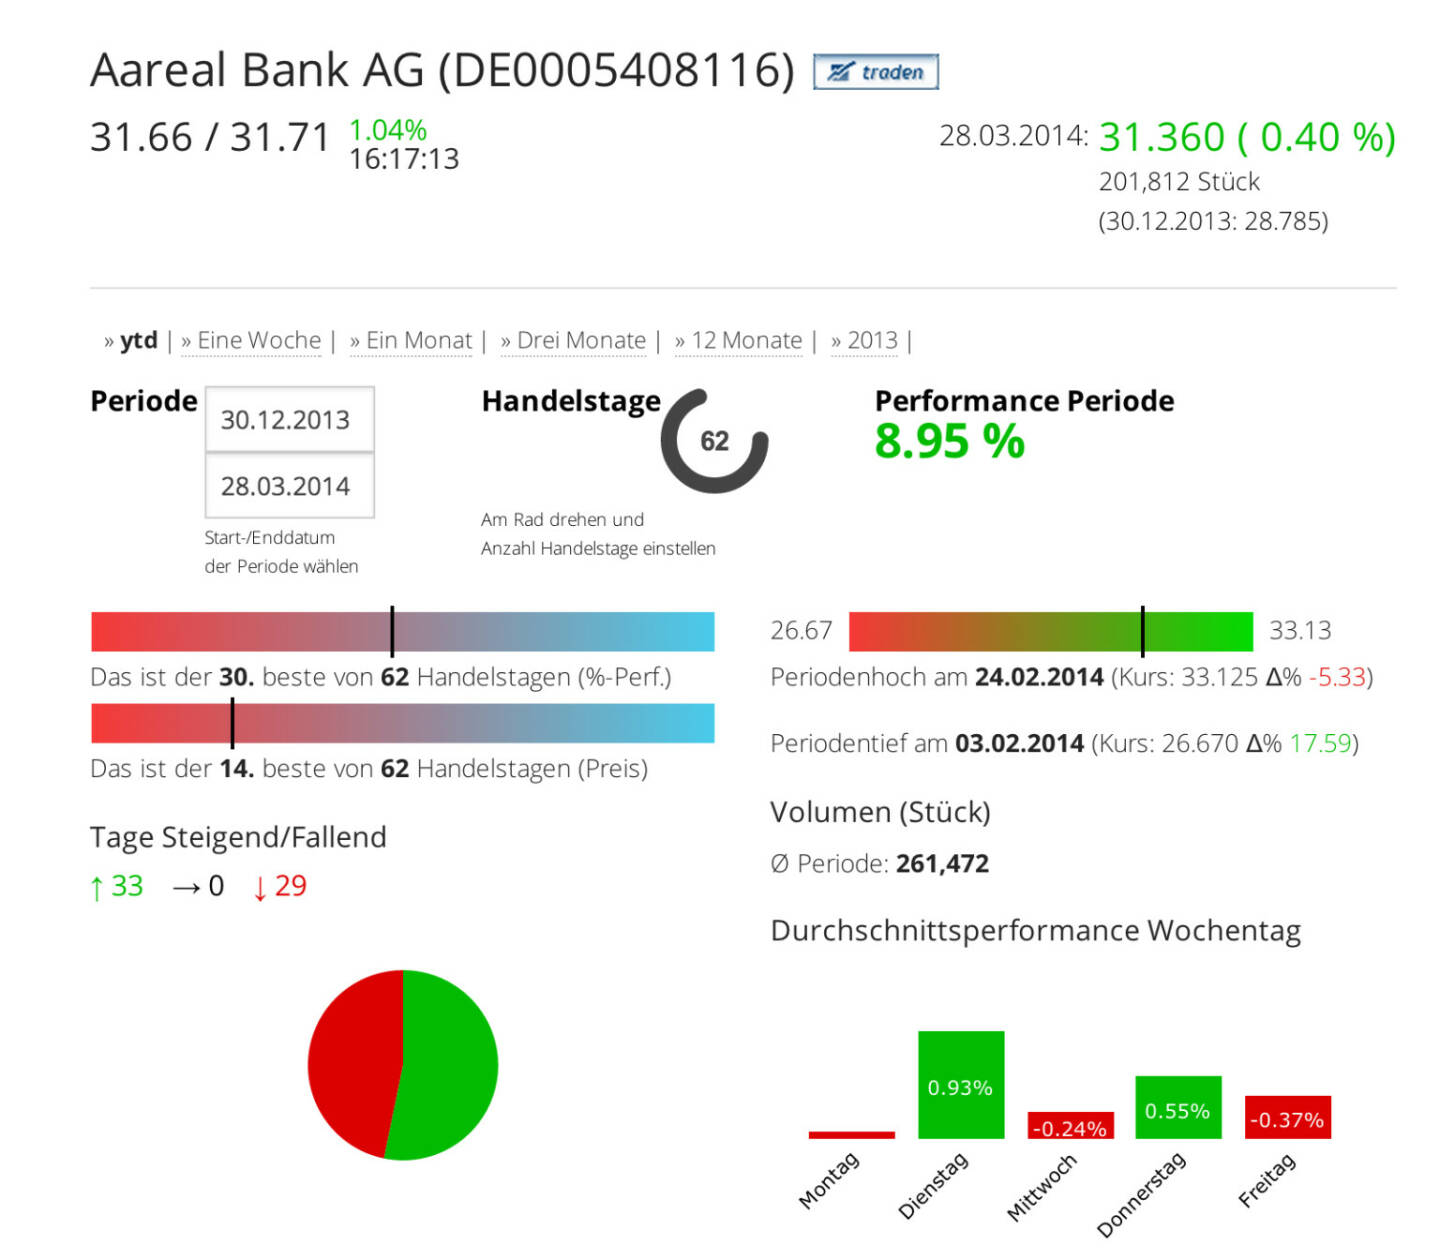 Die Aareal Bank AG im Börse Social Network, http://boerse-social.com/launch/aktie/aareal_bank_ag